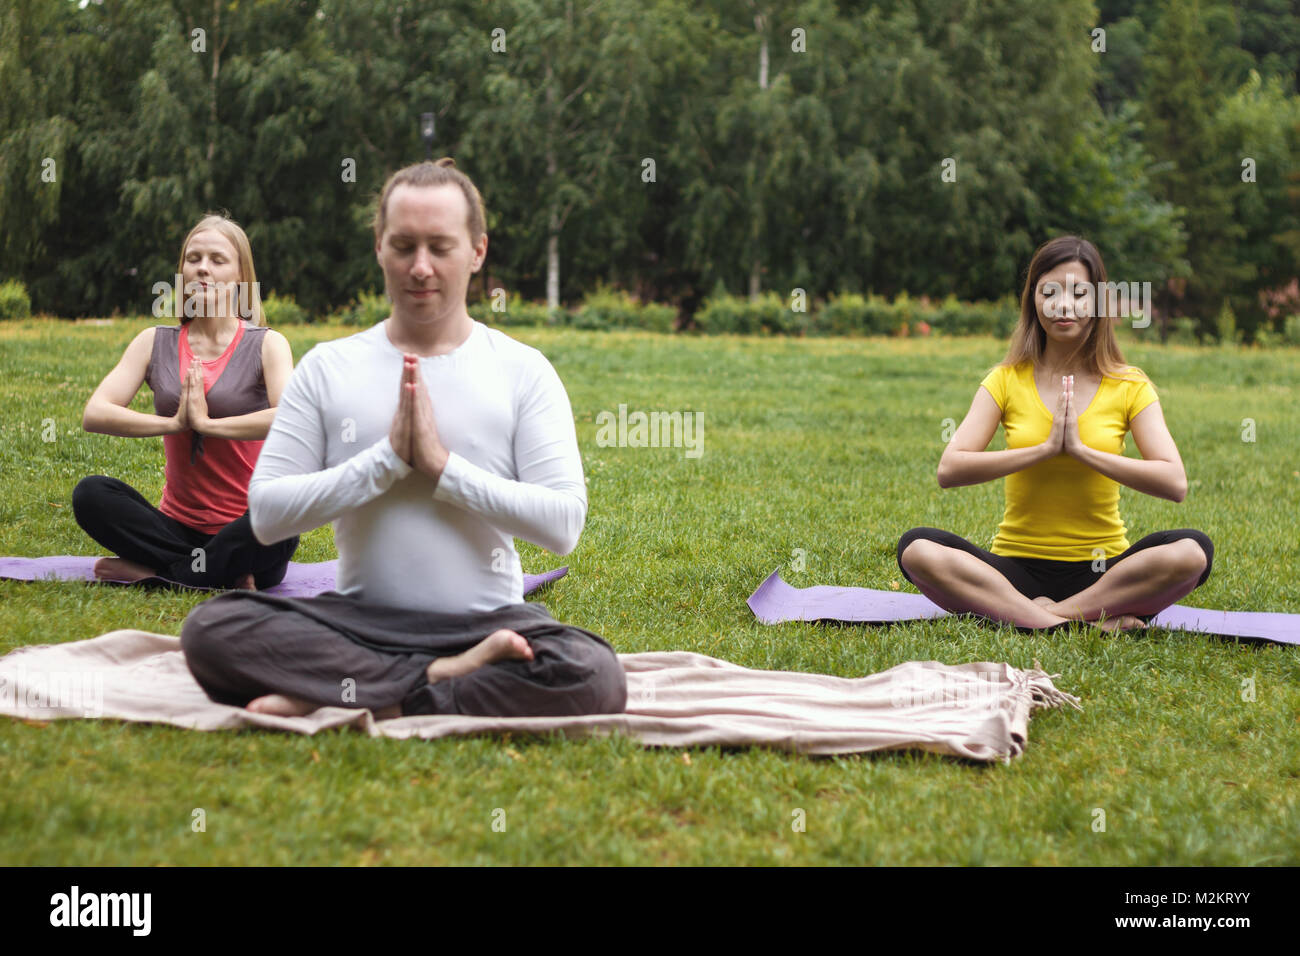 Lo Yoga sportivi nel parco - gli atleti in lotus pongono Foto Stock